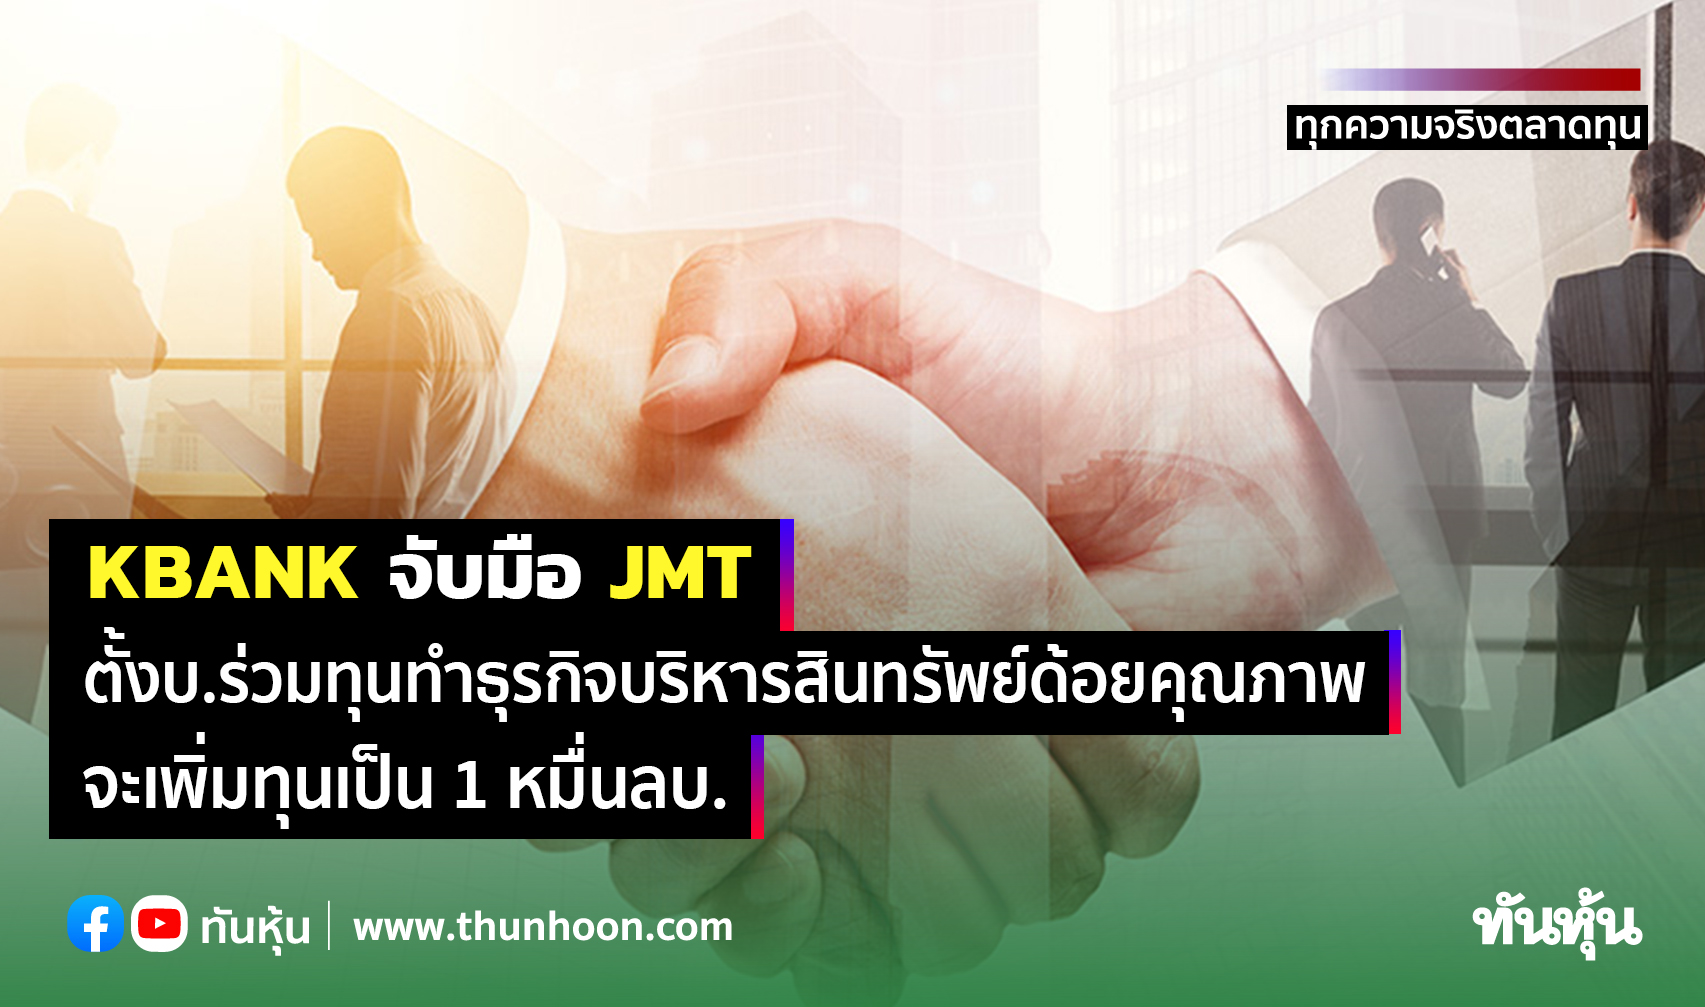 KBANK จับมือ JMT ตั้งบ.ร่วมทุนทำธุรกิจบริหารสินทรัพย์ด้อยคุณภาพ-เพิ่มทุนเป็น 1 หมื่นลบ. 